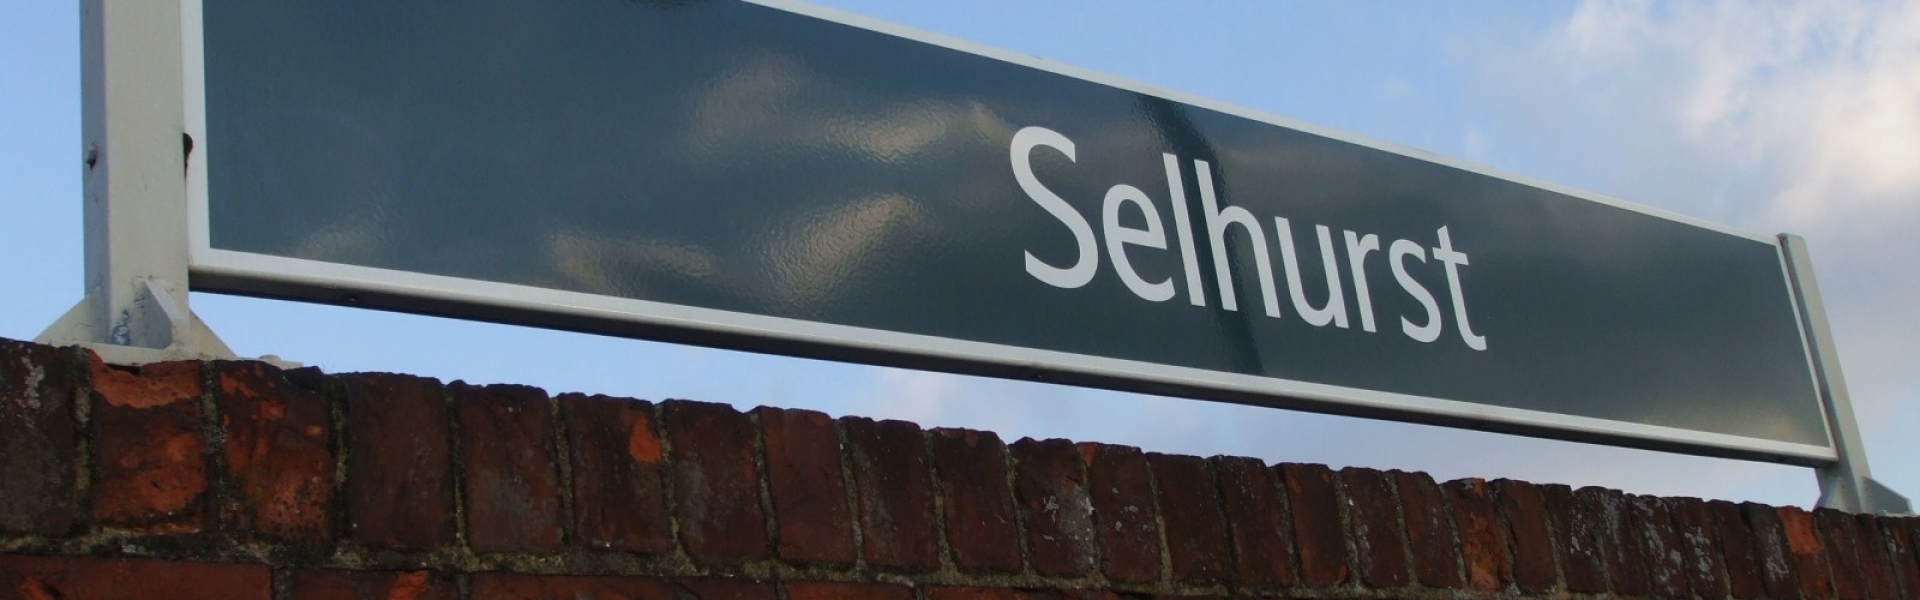 Selhurst